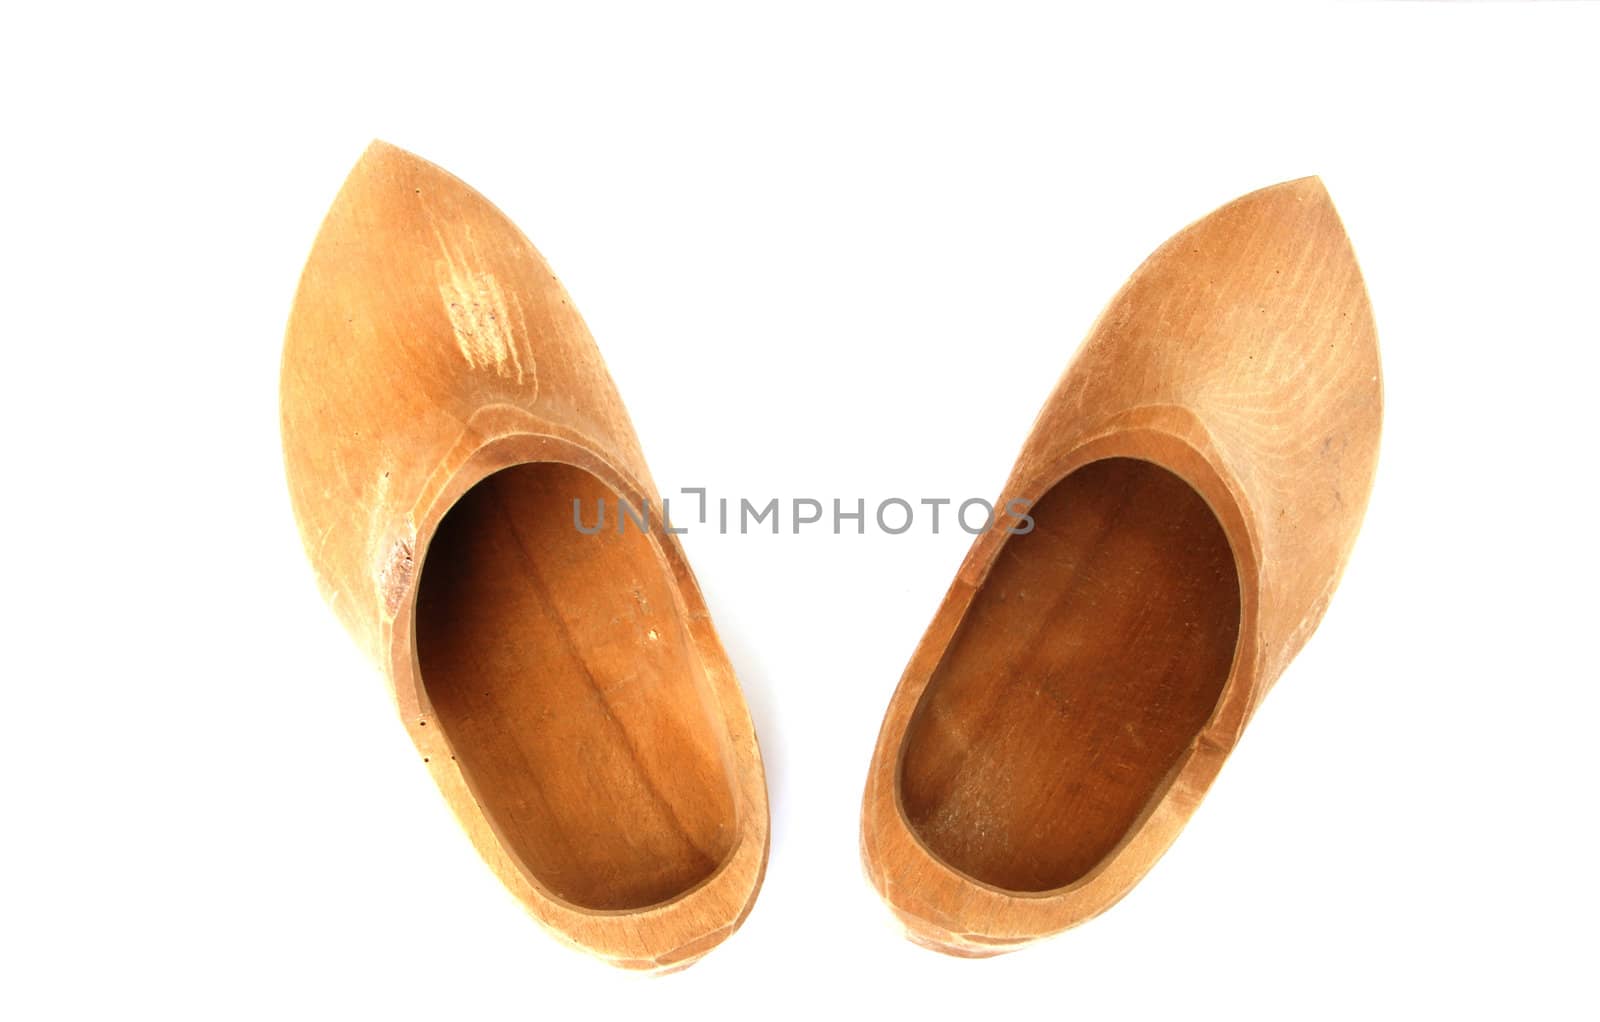 Wooden clogs by drakodav